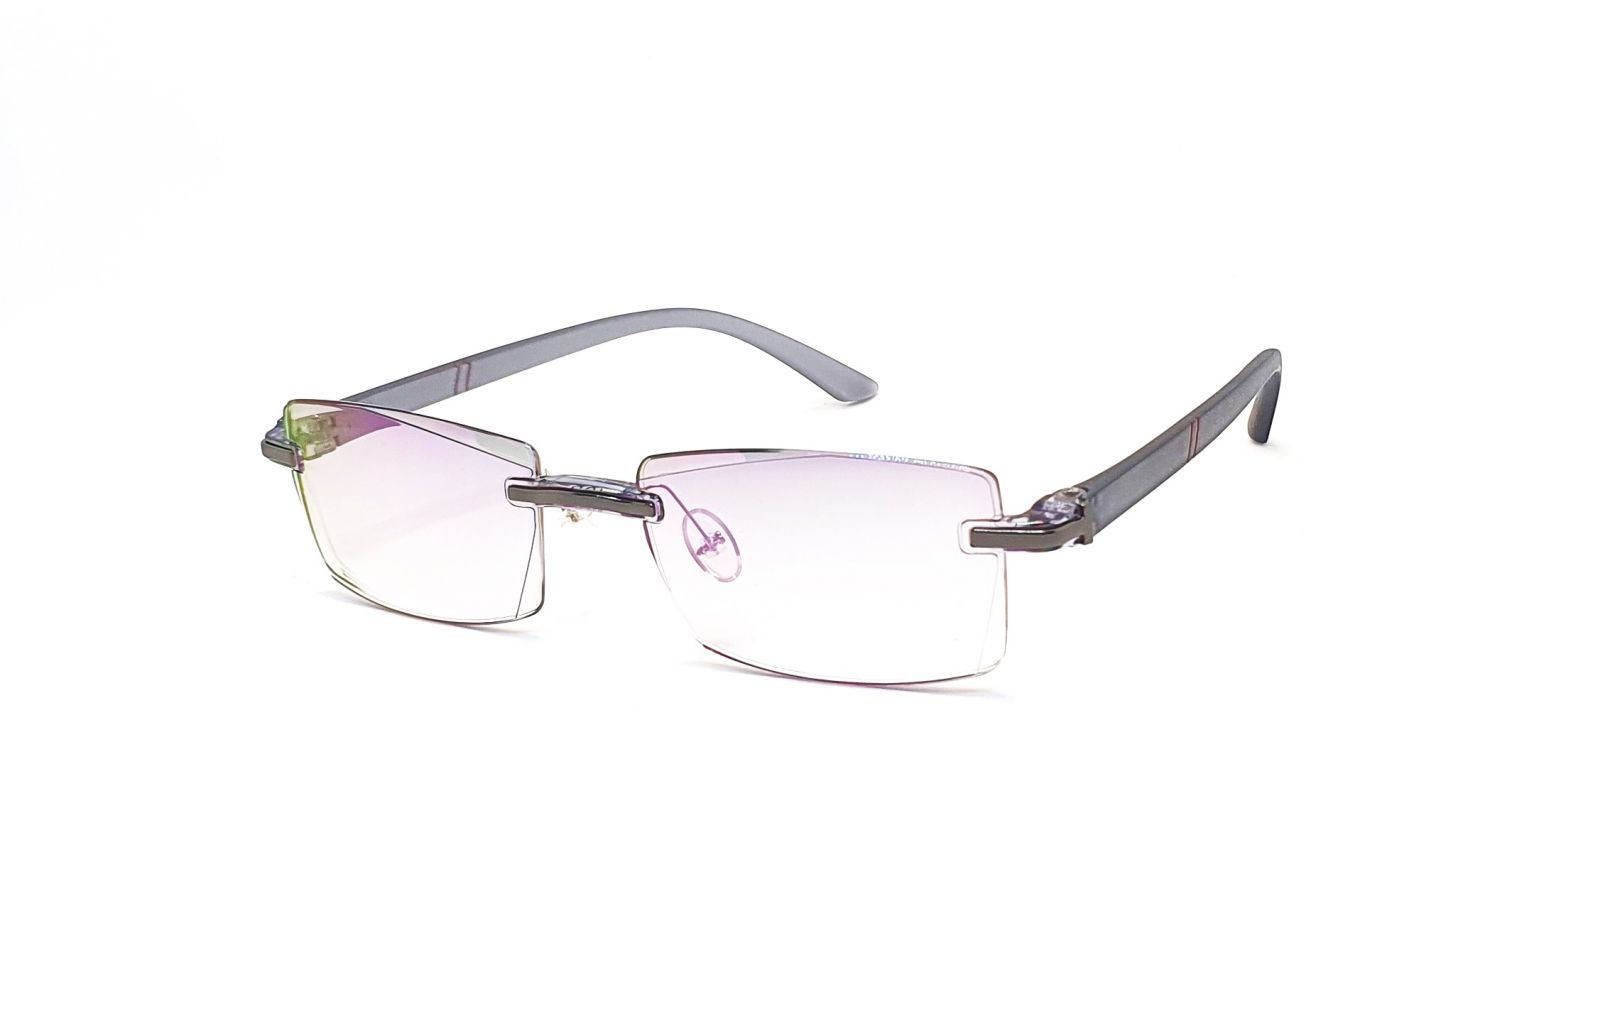 Bezrámečkové dioptrické brýle 346 / -1,50 s antireflexní vrstvou